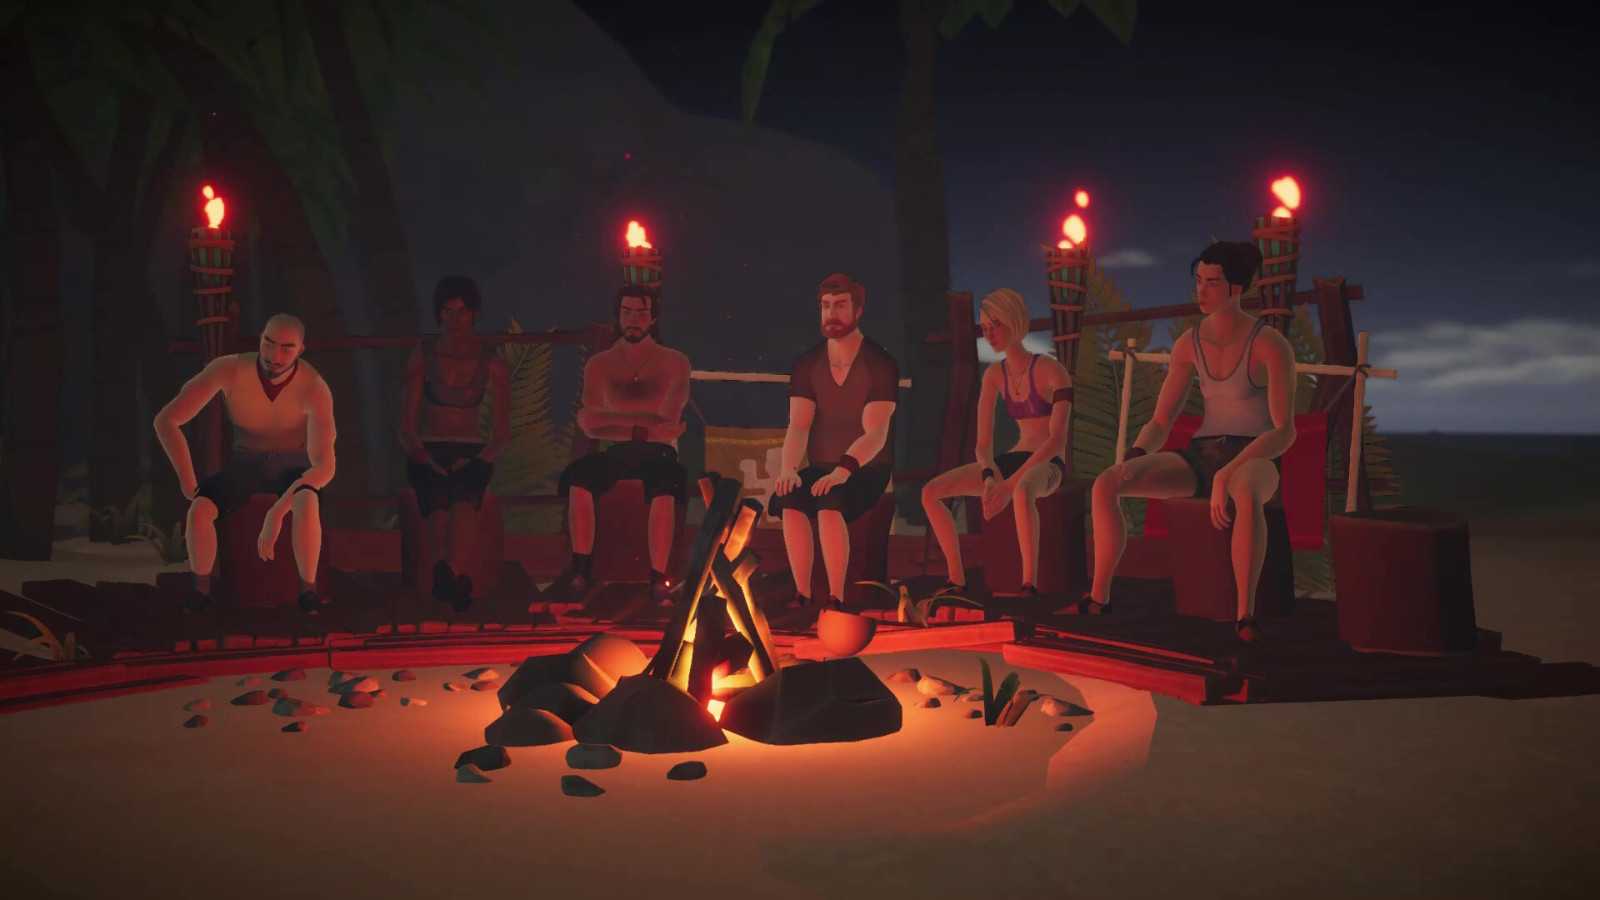 《幸存者：遗弃之岛》Steam页面上线